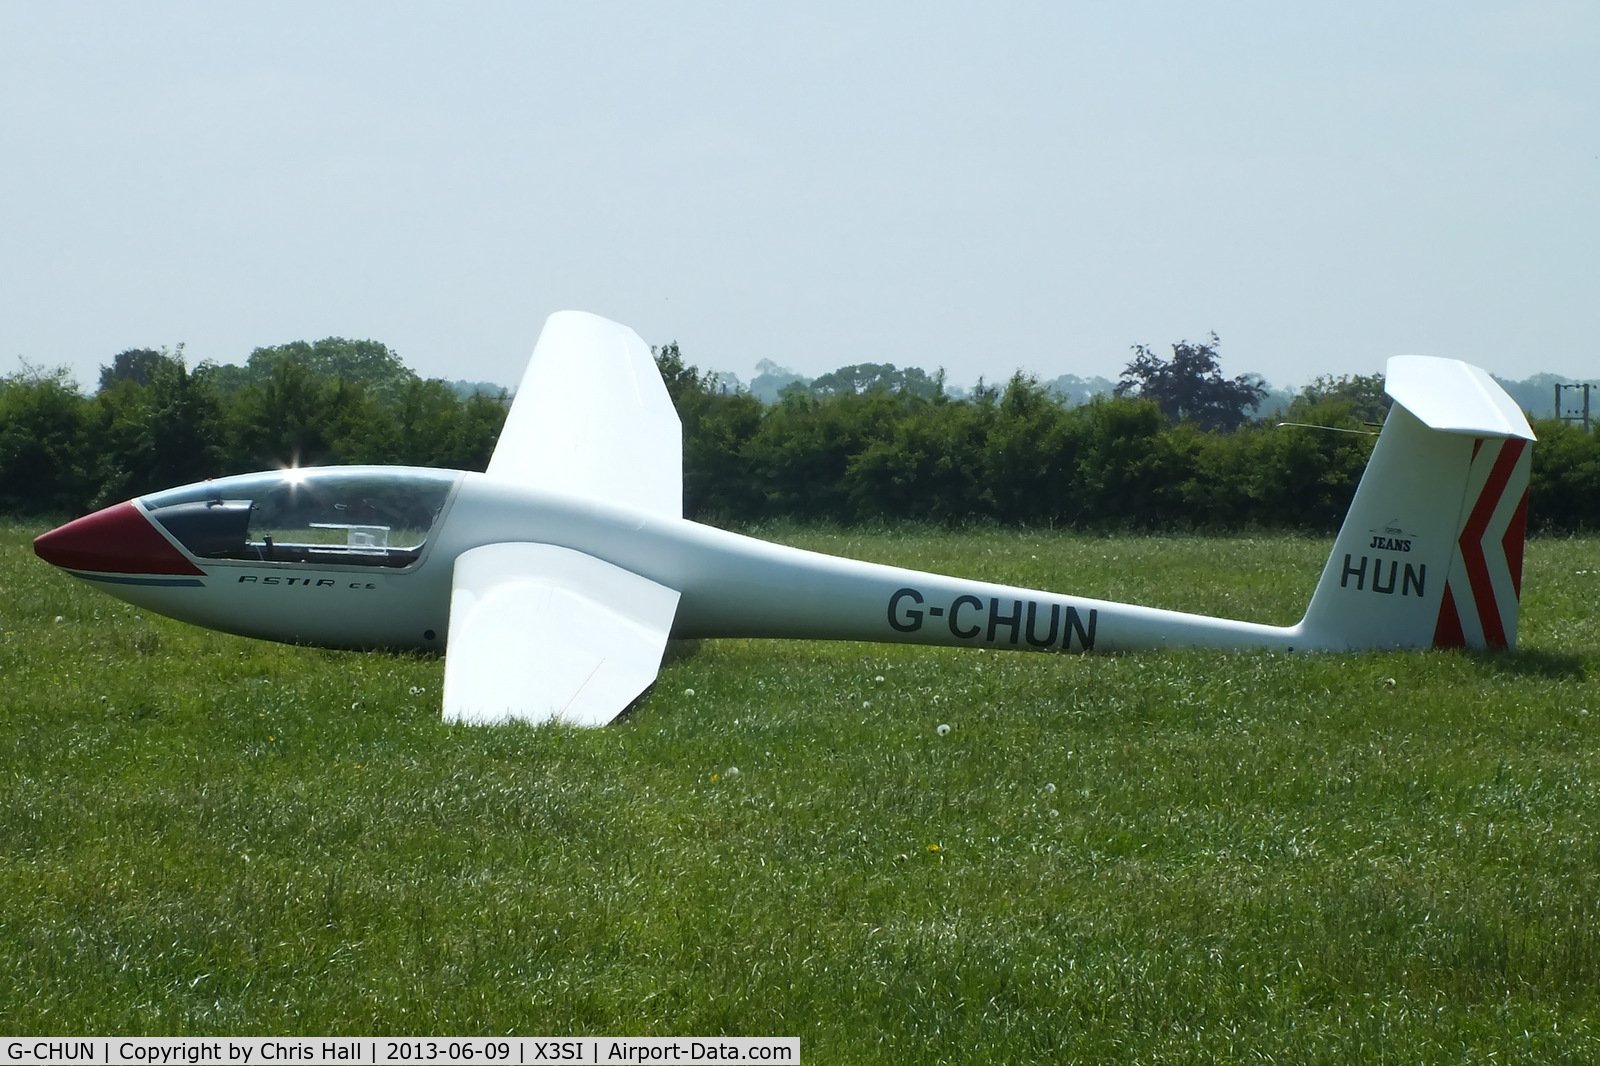 G-CHUN, 1978 Grob G-102 Astir CS Jeans C/N 2089, Staffordshire Gliding Club, Seighford Airfield